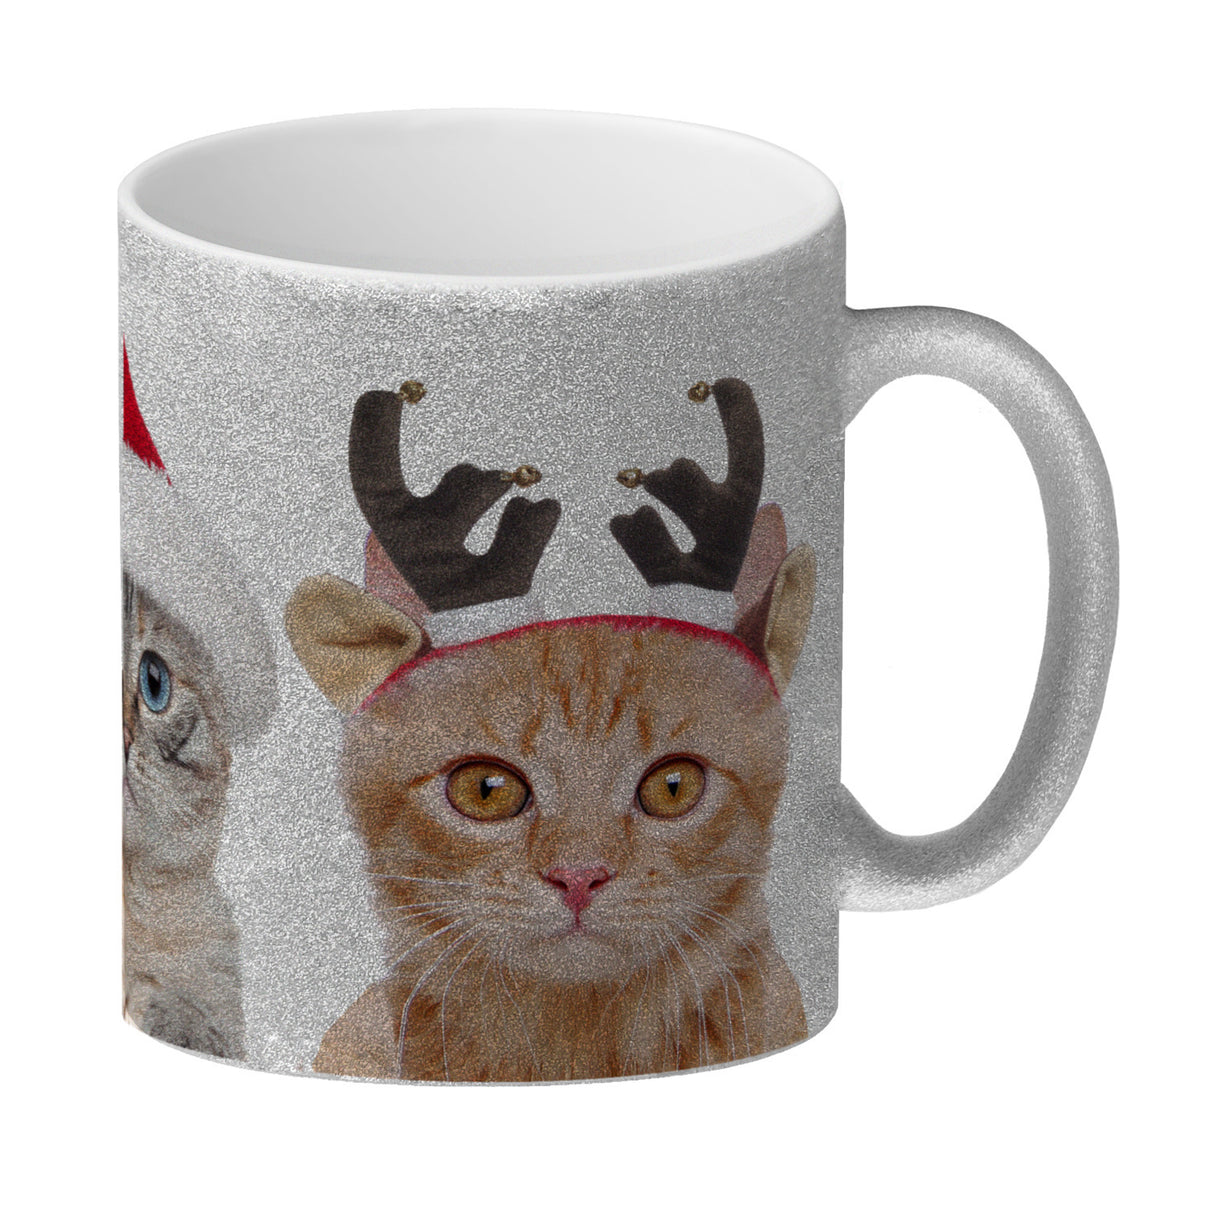 Katzen Tasse Kaffeebecher mit Weihnachtsmotiv